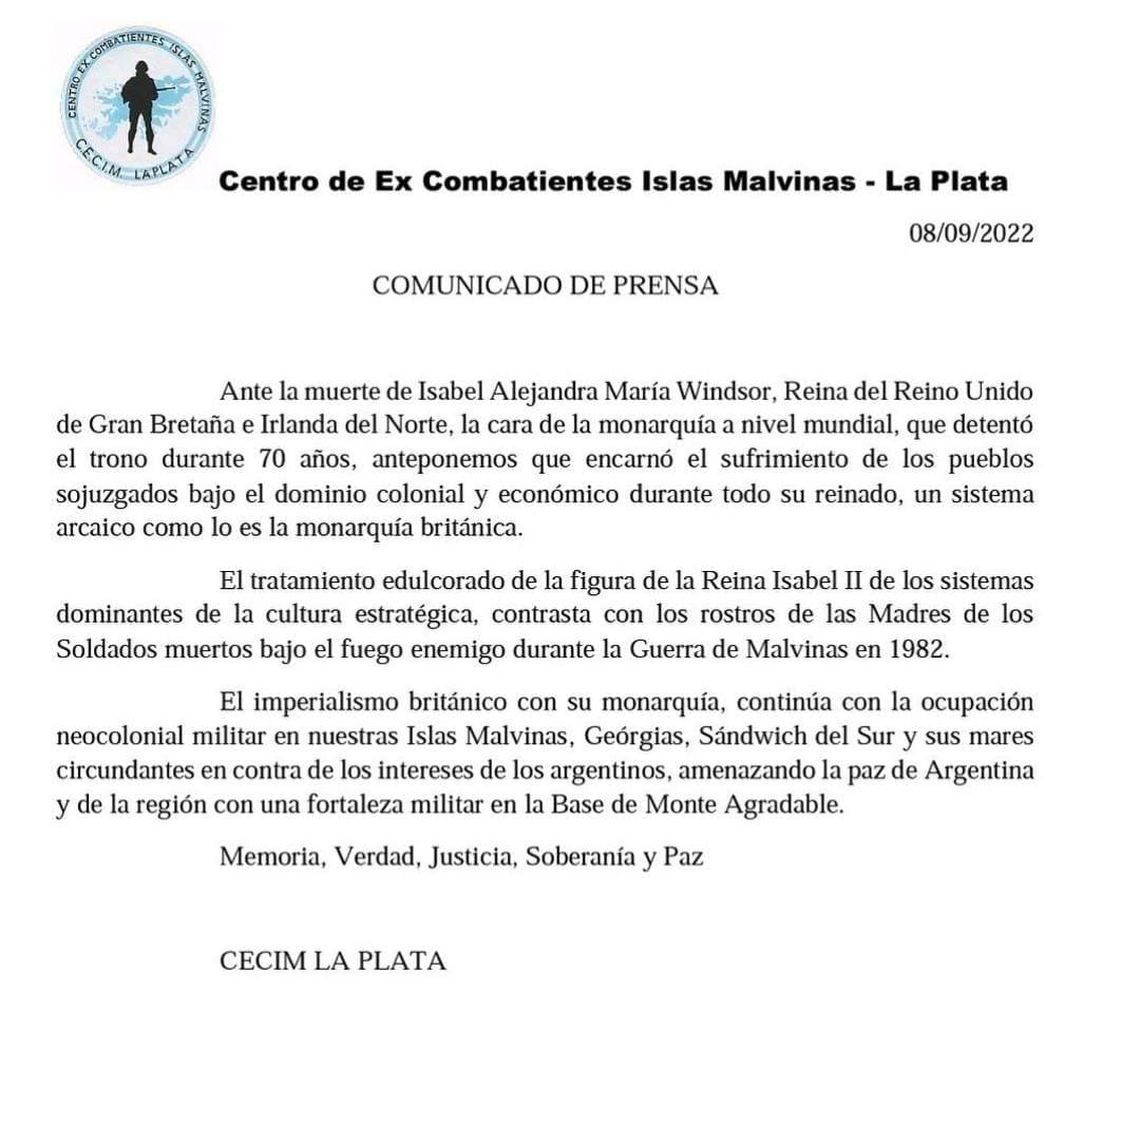 El comunicado del Centro de ex Combatientes Islas Malvinas (Cecim).